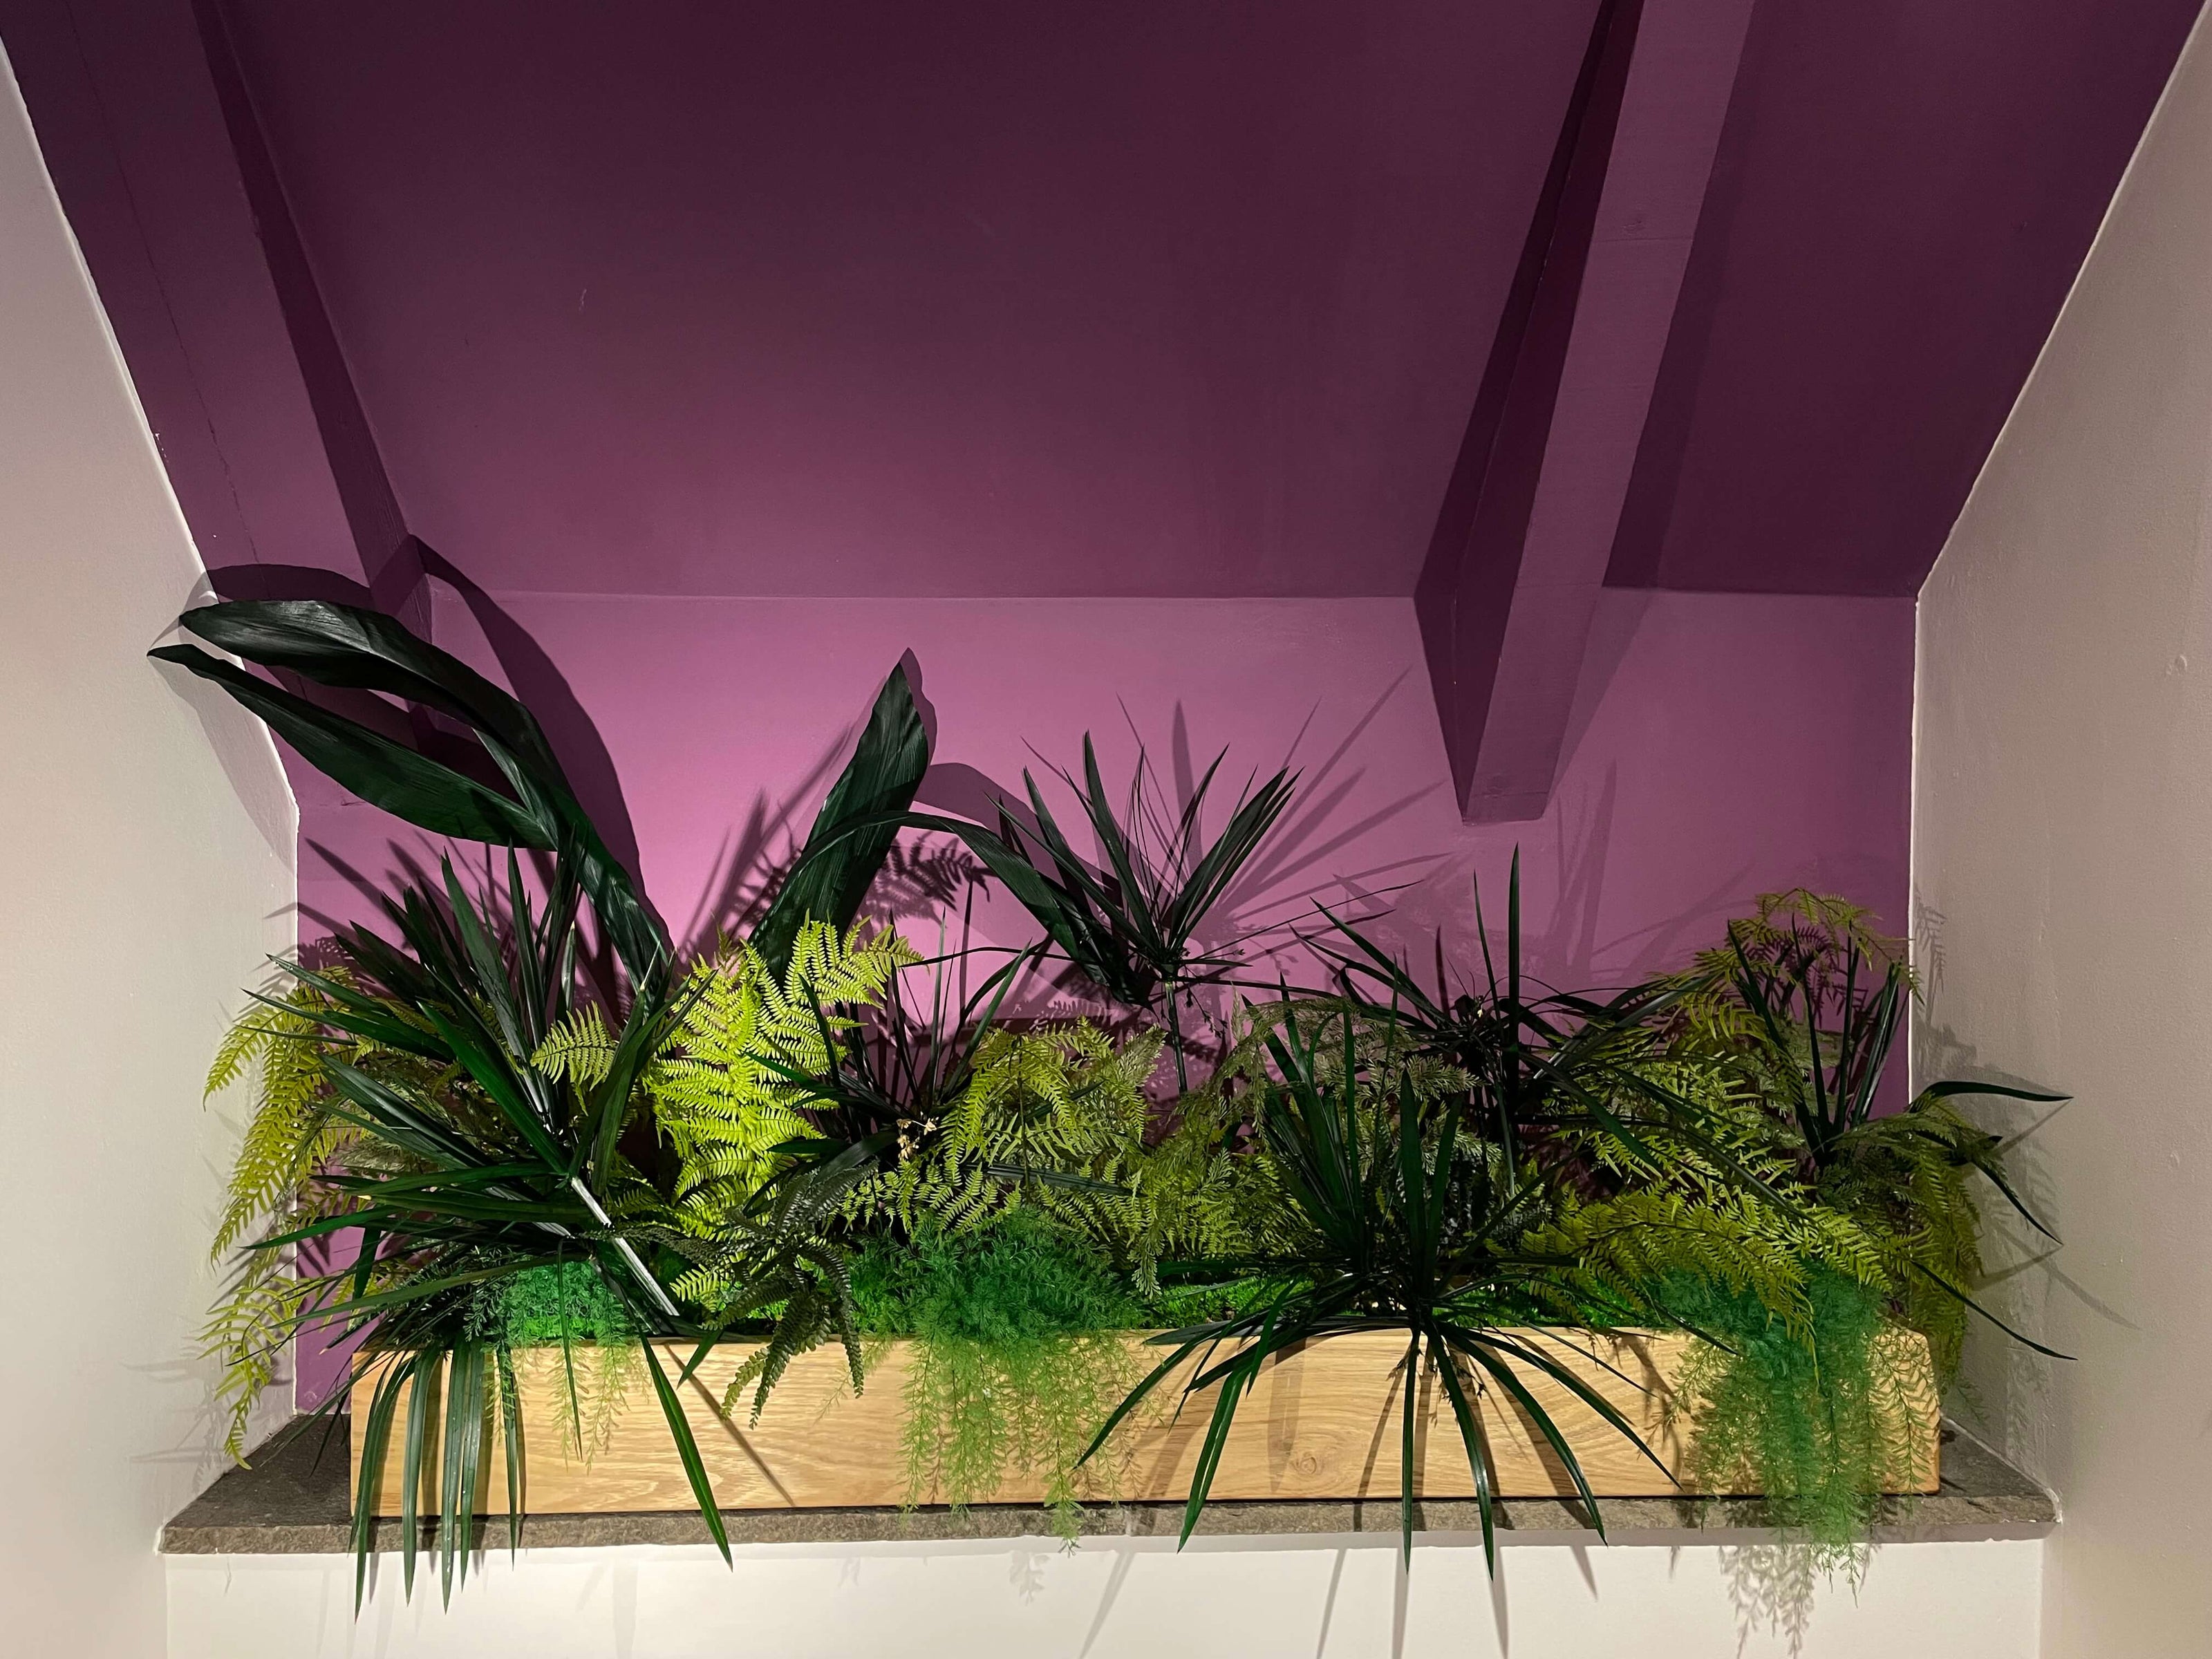 Décoration intérieure au design floral en lichen stabilisé et plantes naturelles stabilisées dans une maison contemporaine. Composition en végétaux stabilisés sur les tons vert.